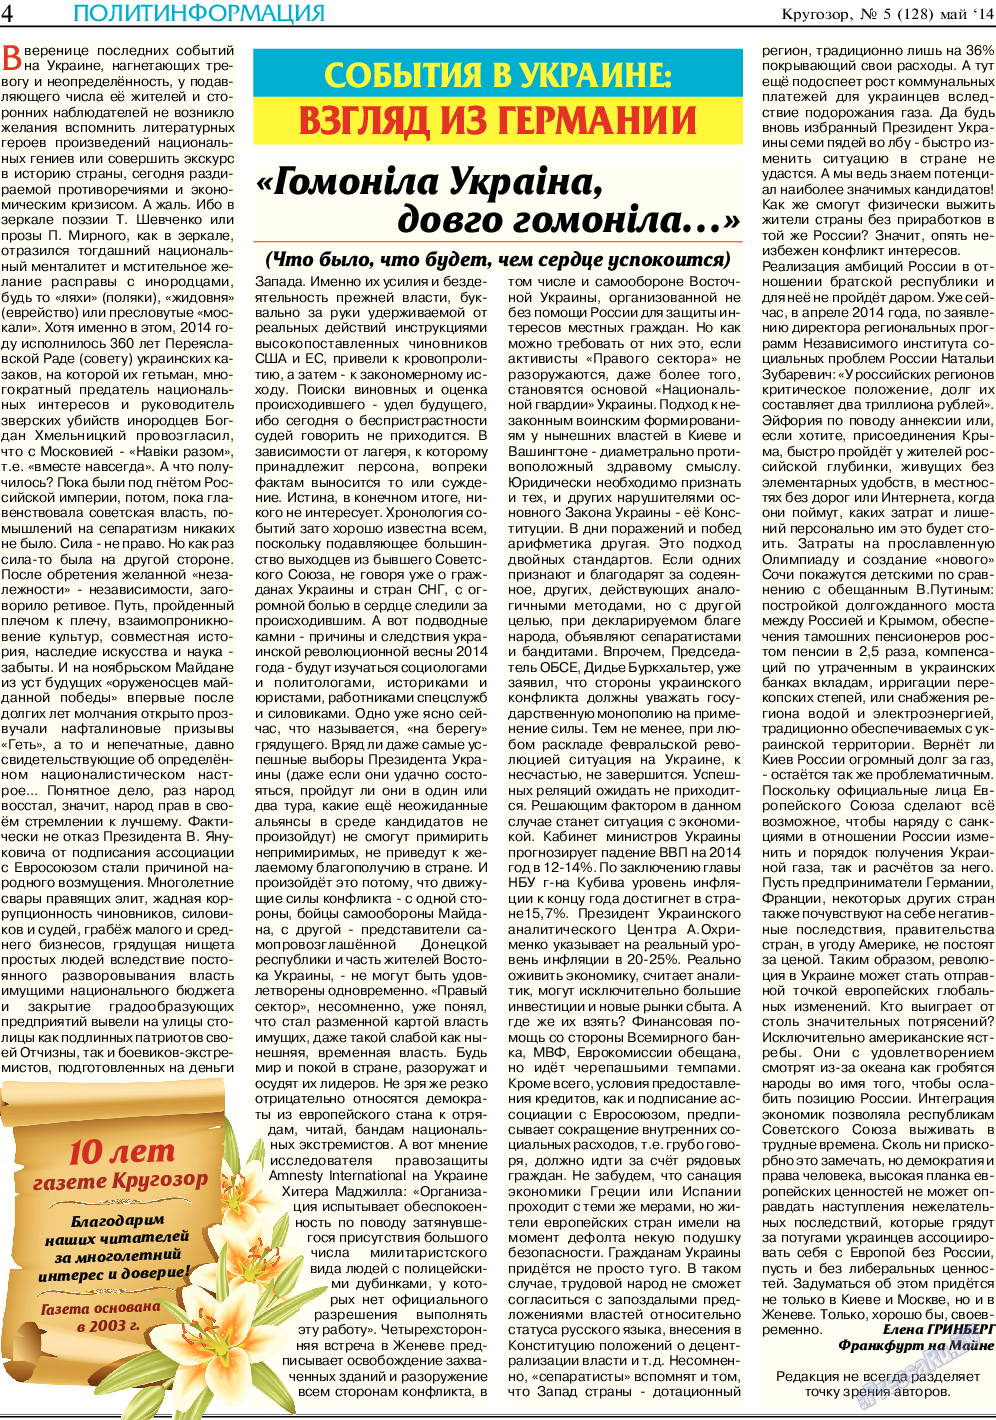 Кругозор, газета. 2014 №5 стр.4